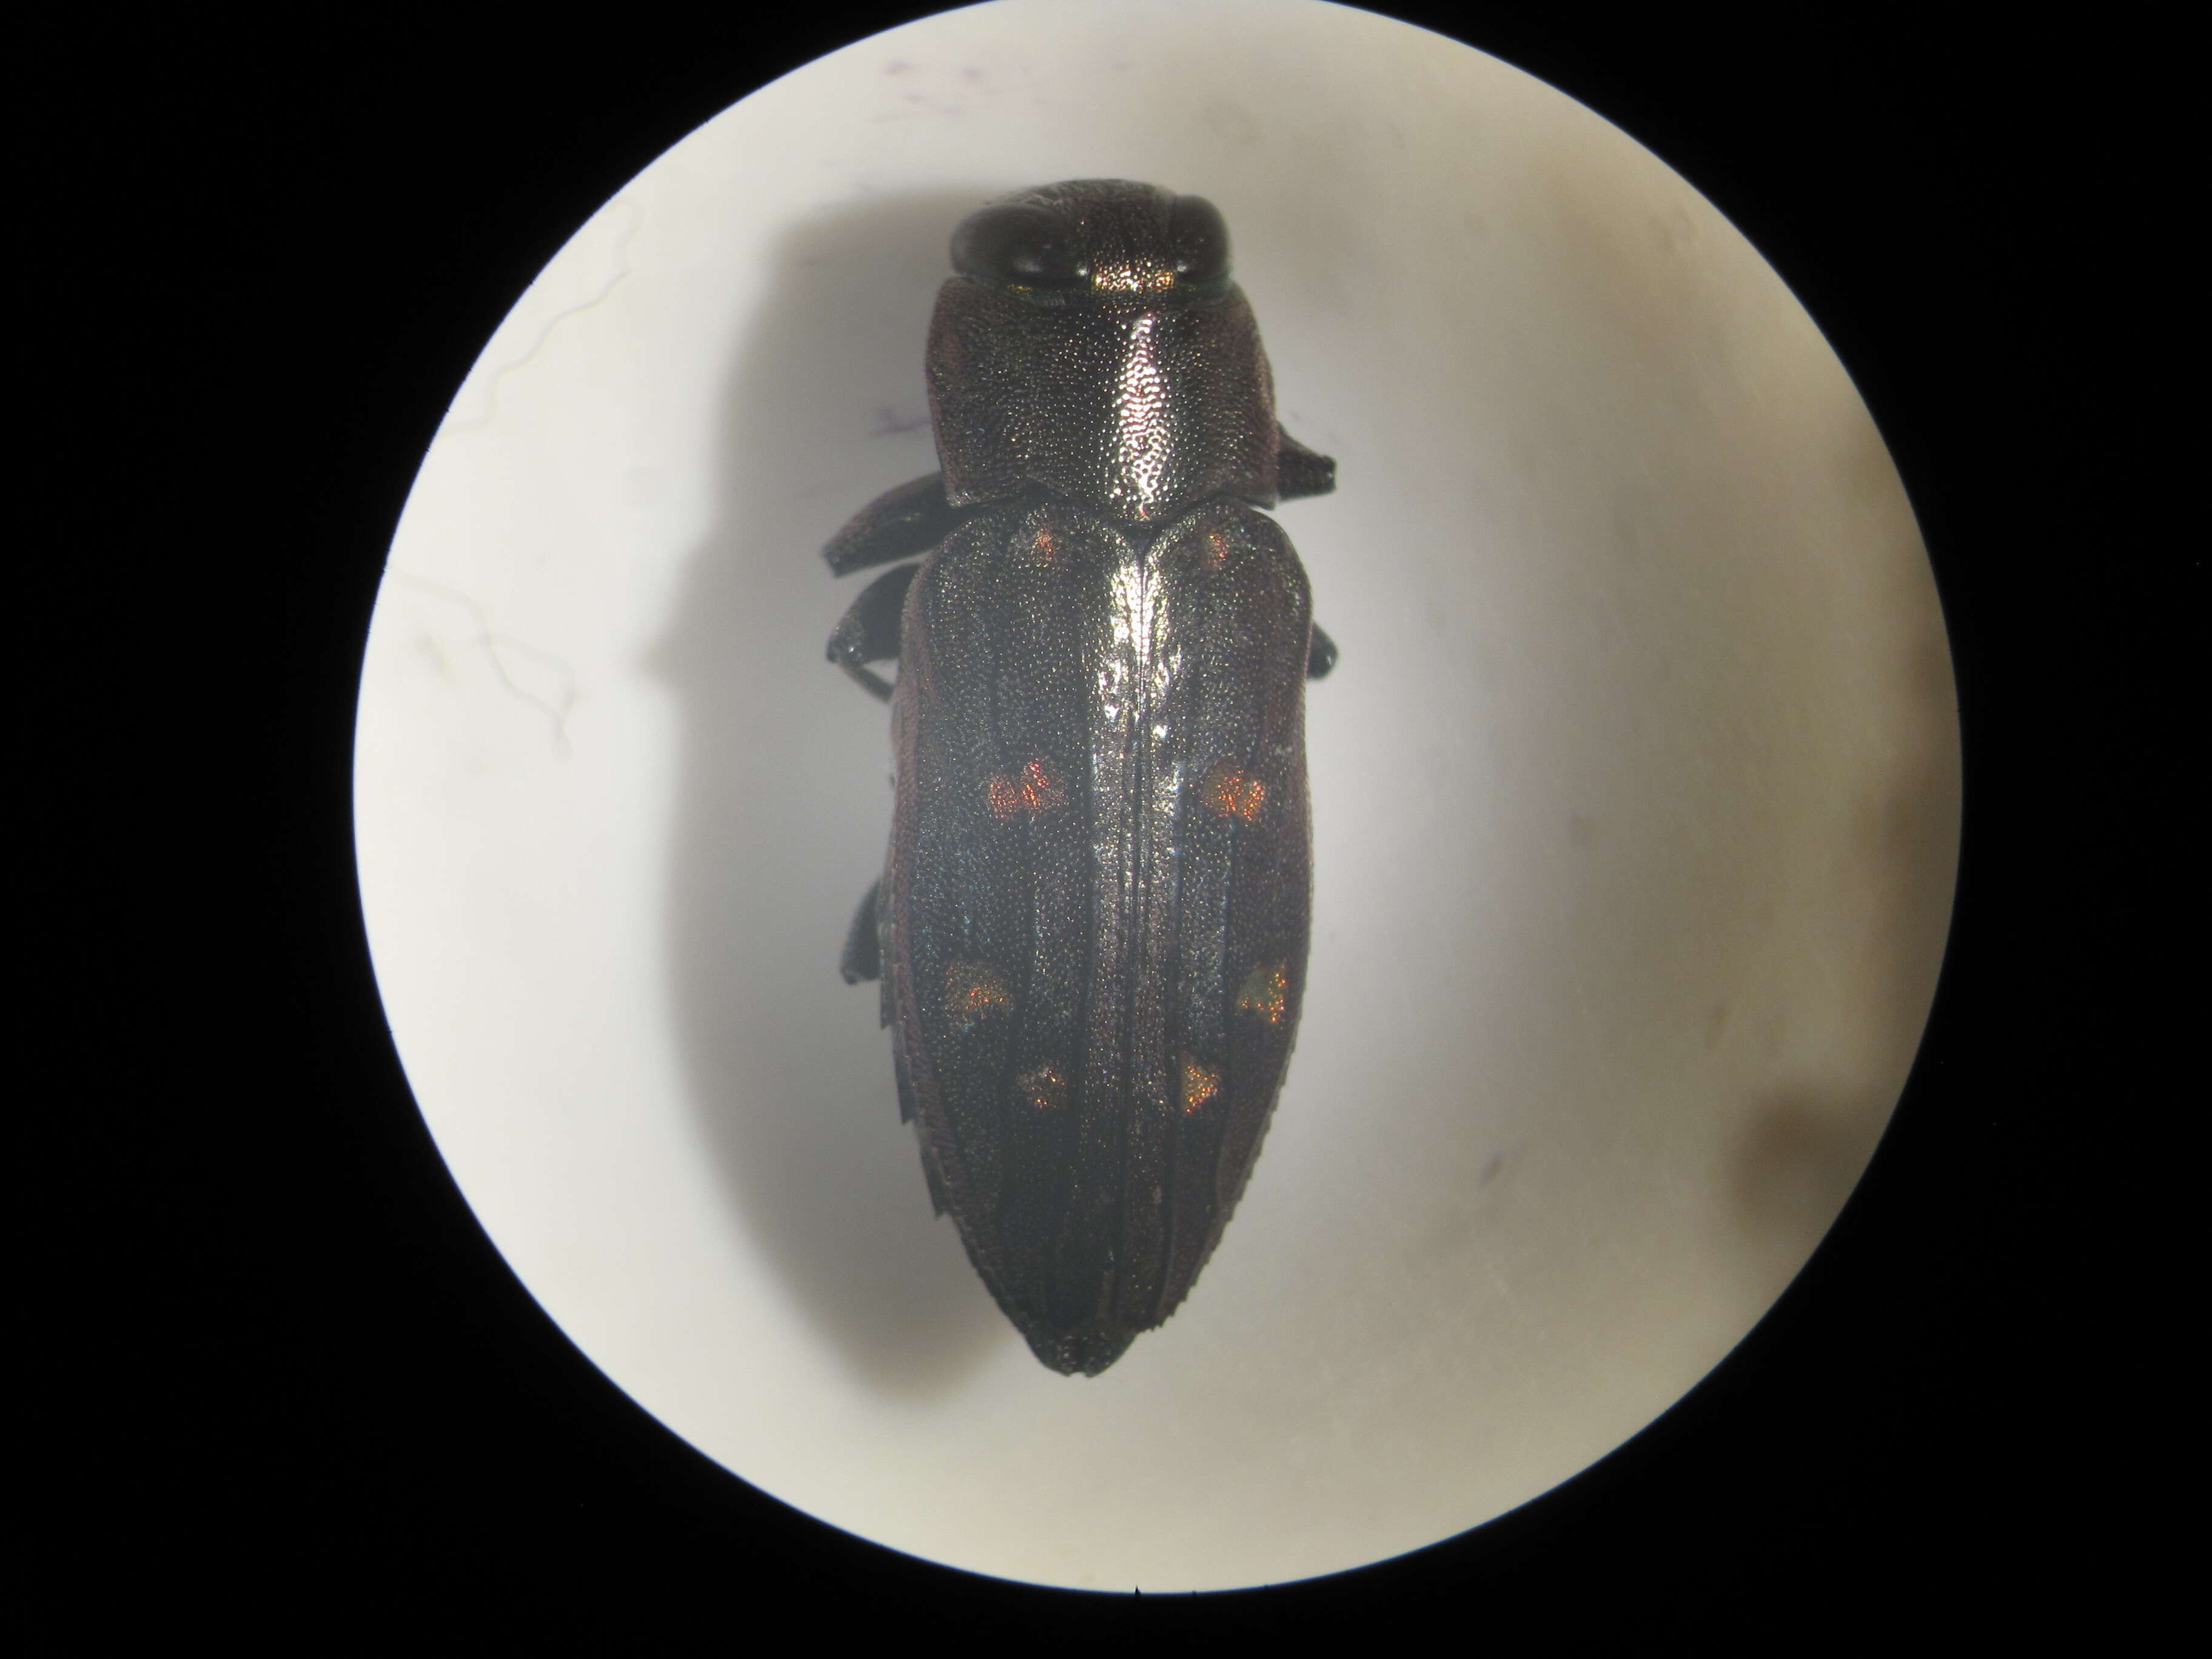 Image of Jewel beetle